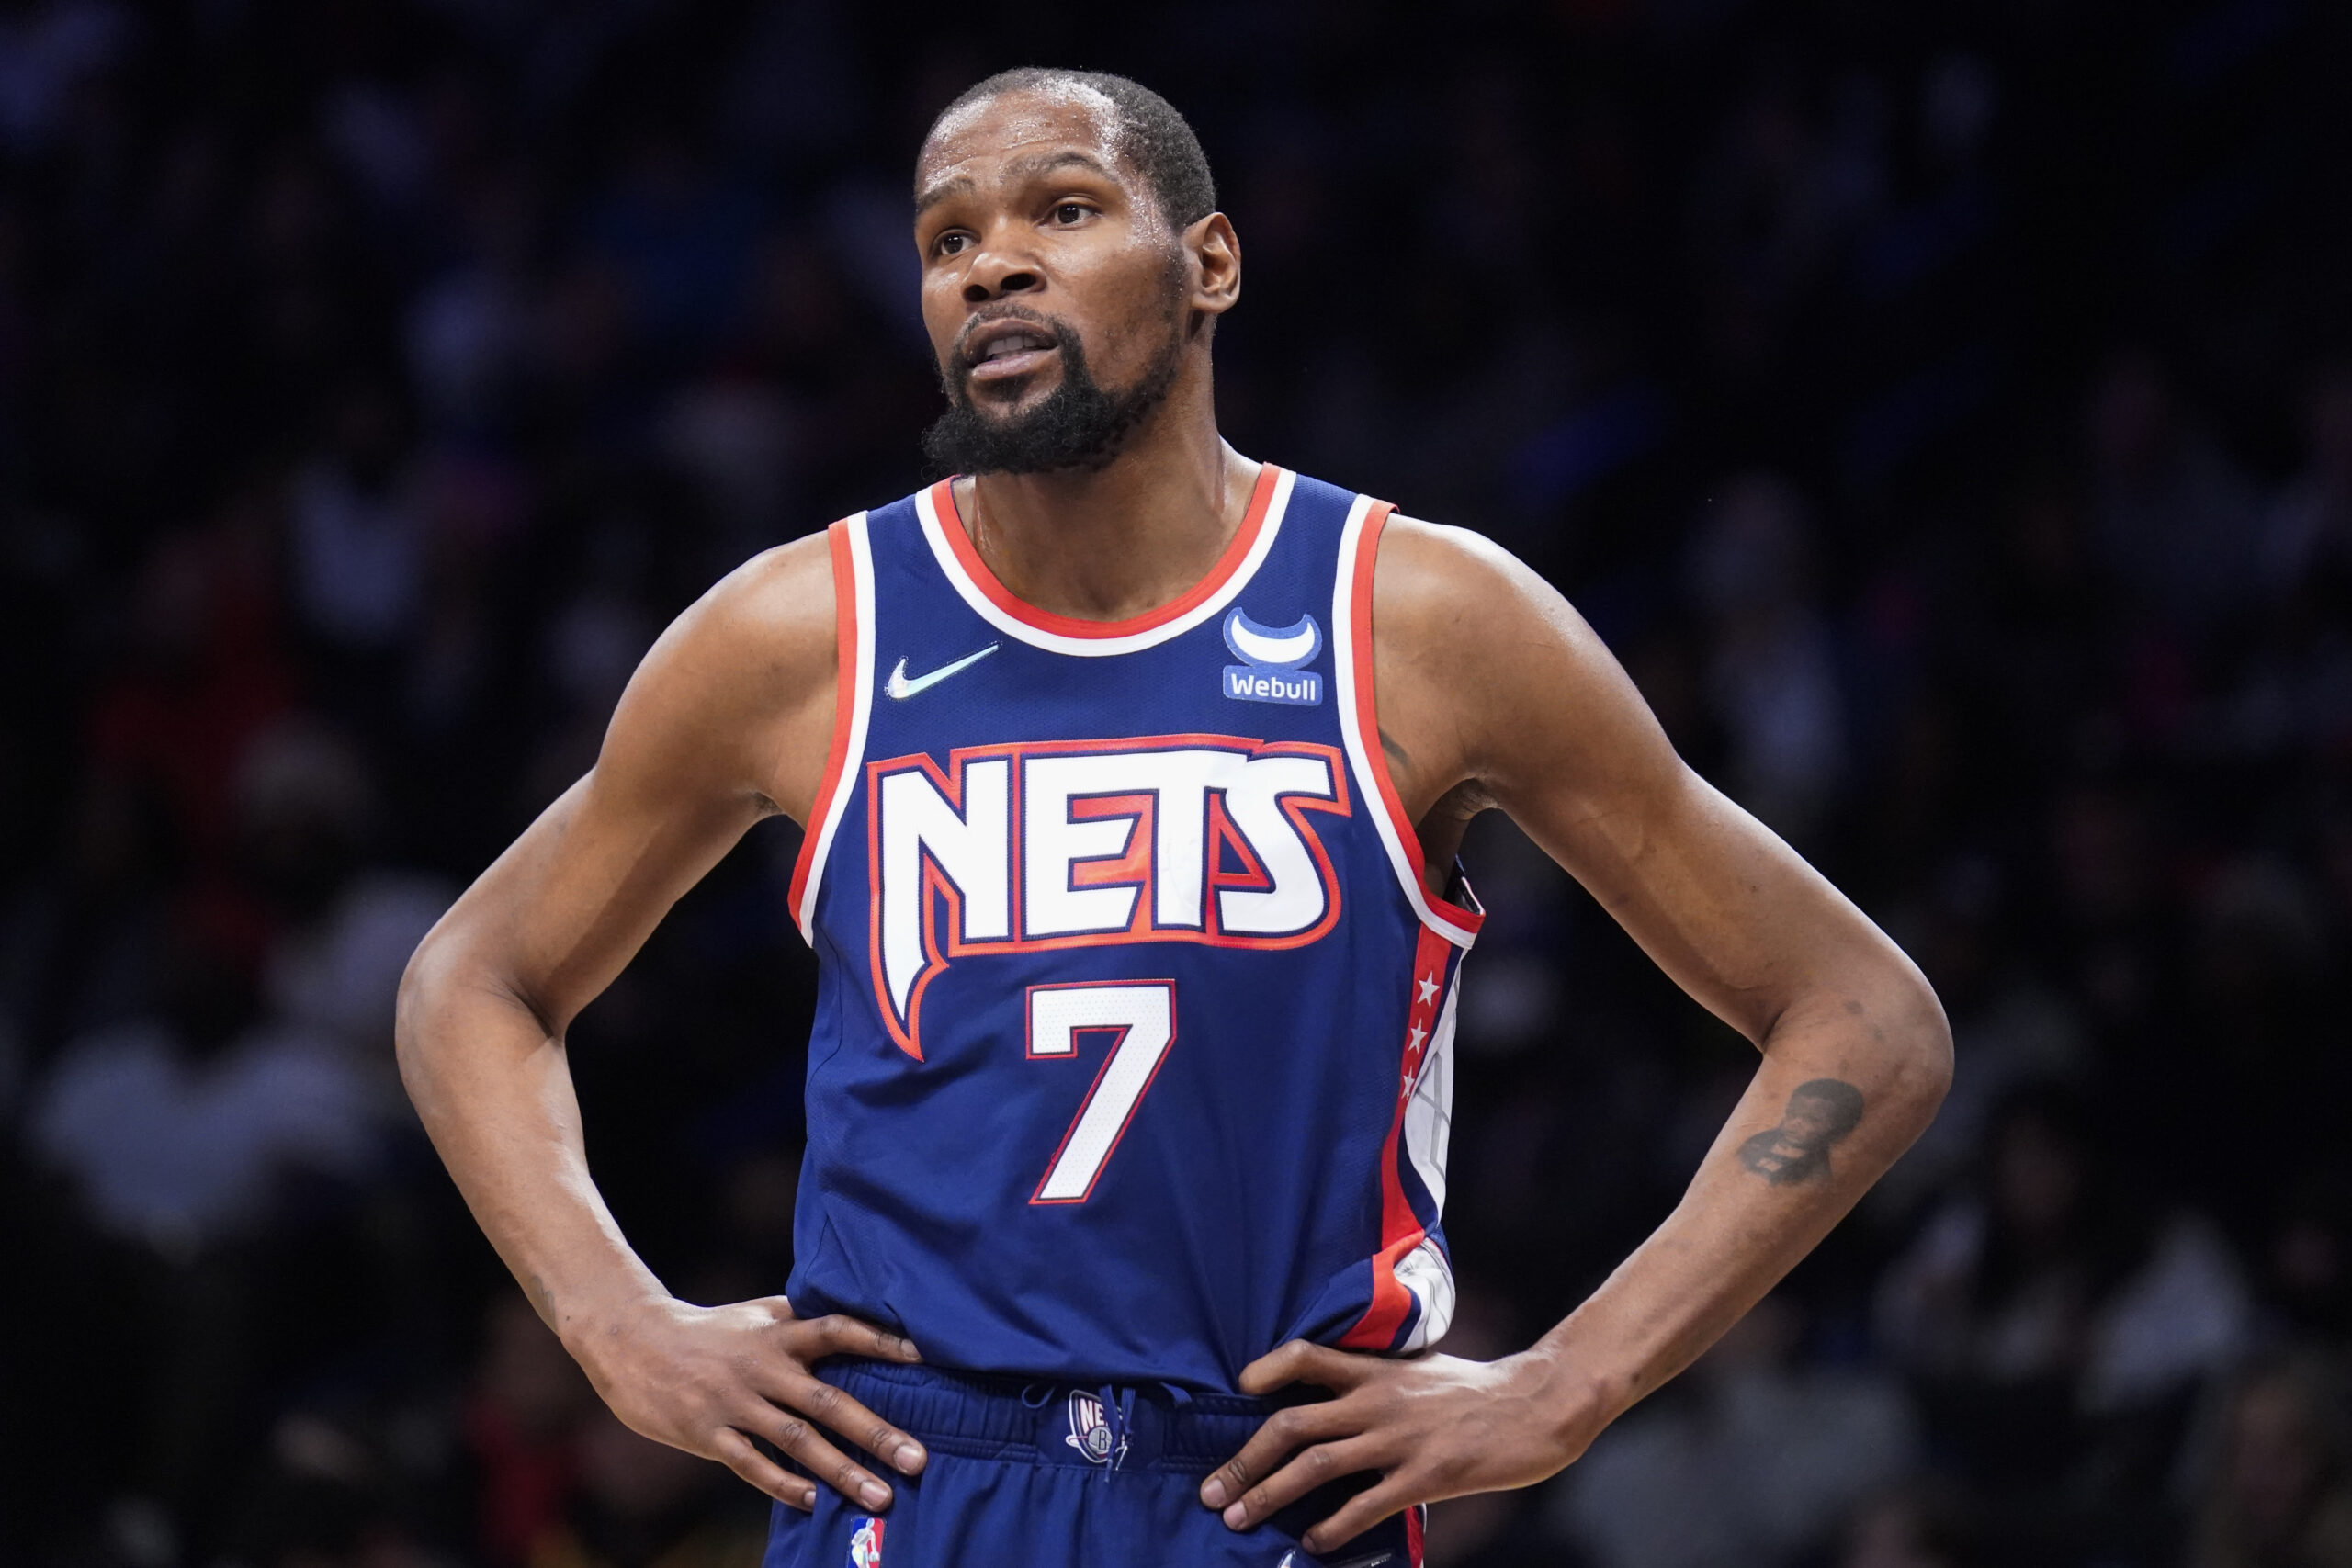 NBA Basketball: Kevin Durant von Brooklyn Nets muss nach Beleidigung Strafe zahlen